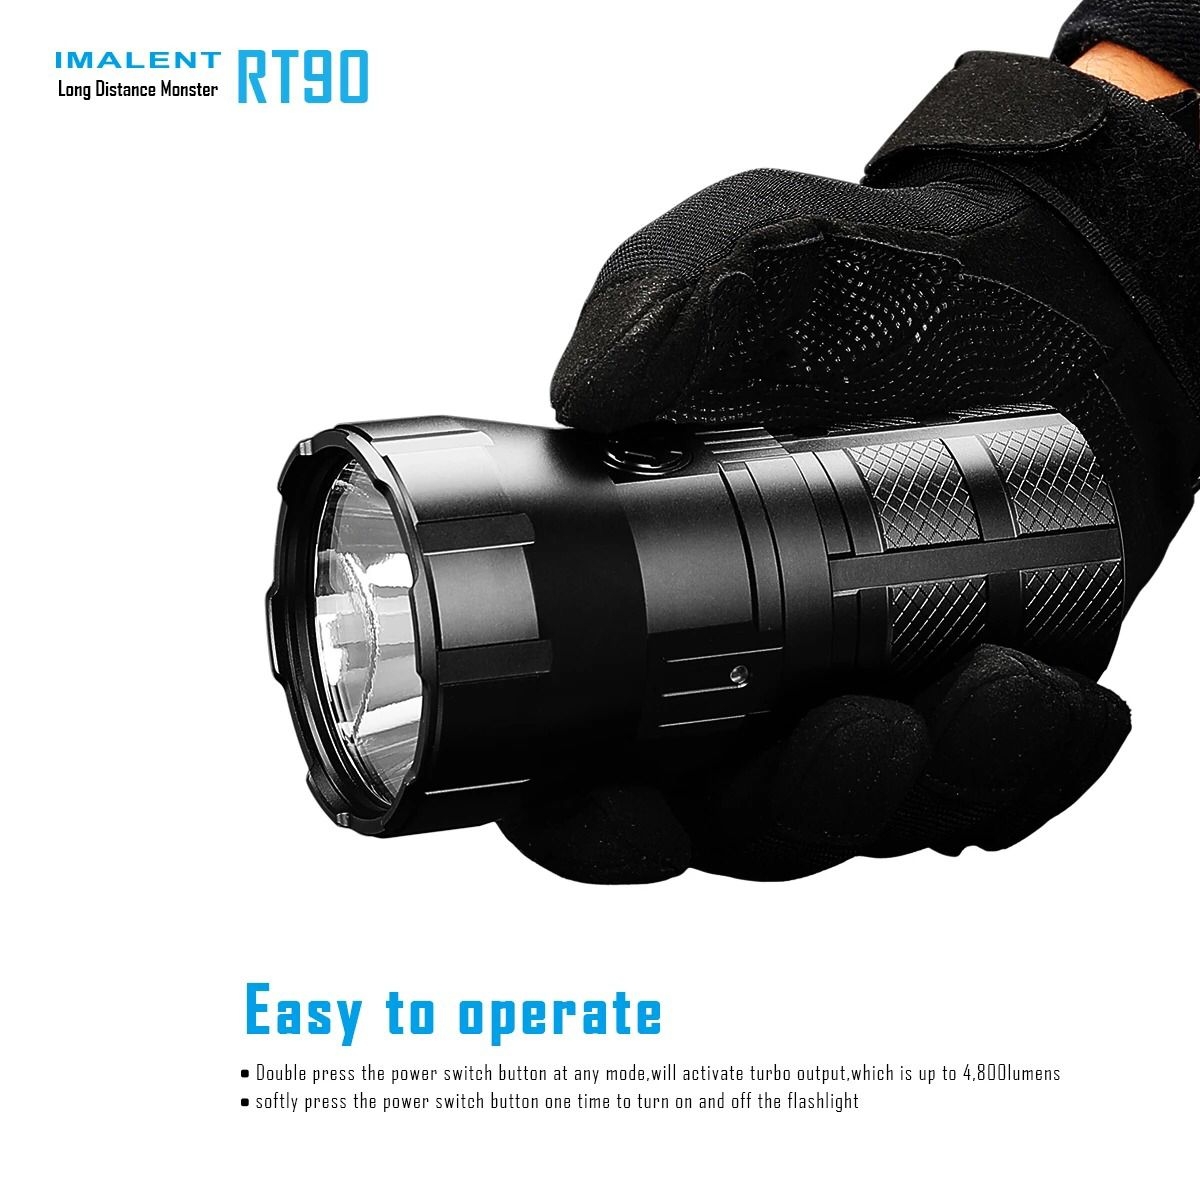 كشاف يدوي قابل لإعادة الشحن Imalent RT90 Flashlight بقوة 4800 لومن